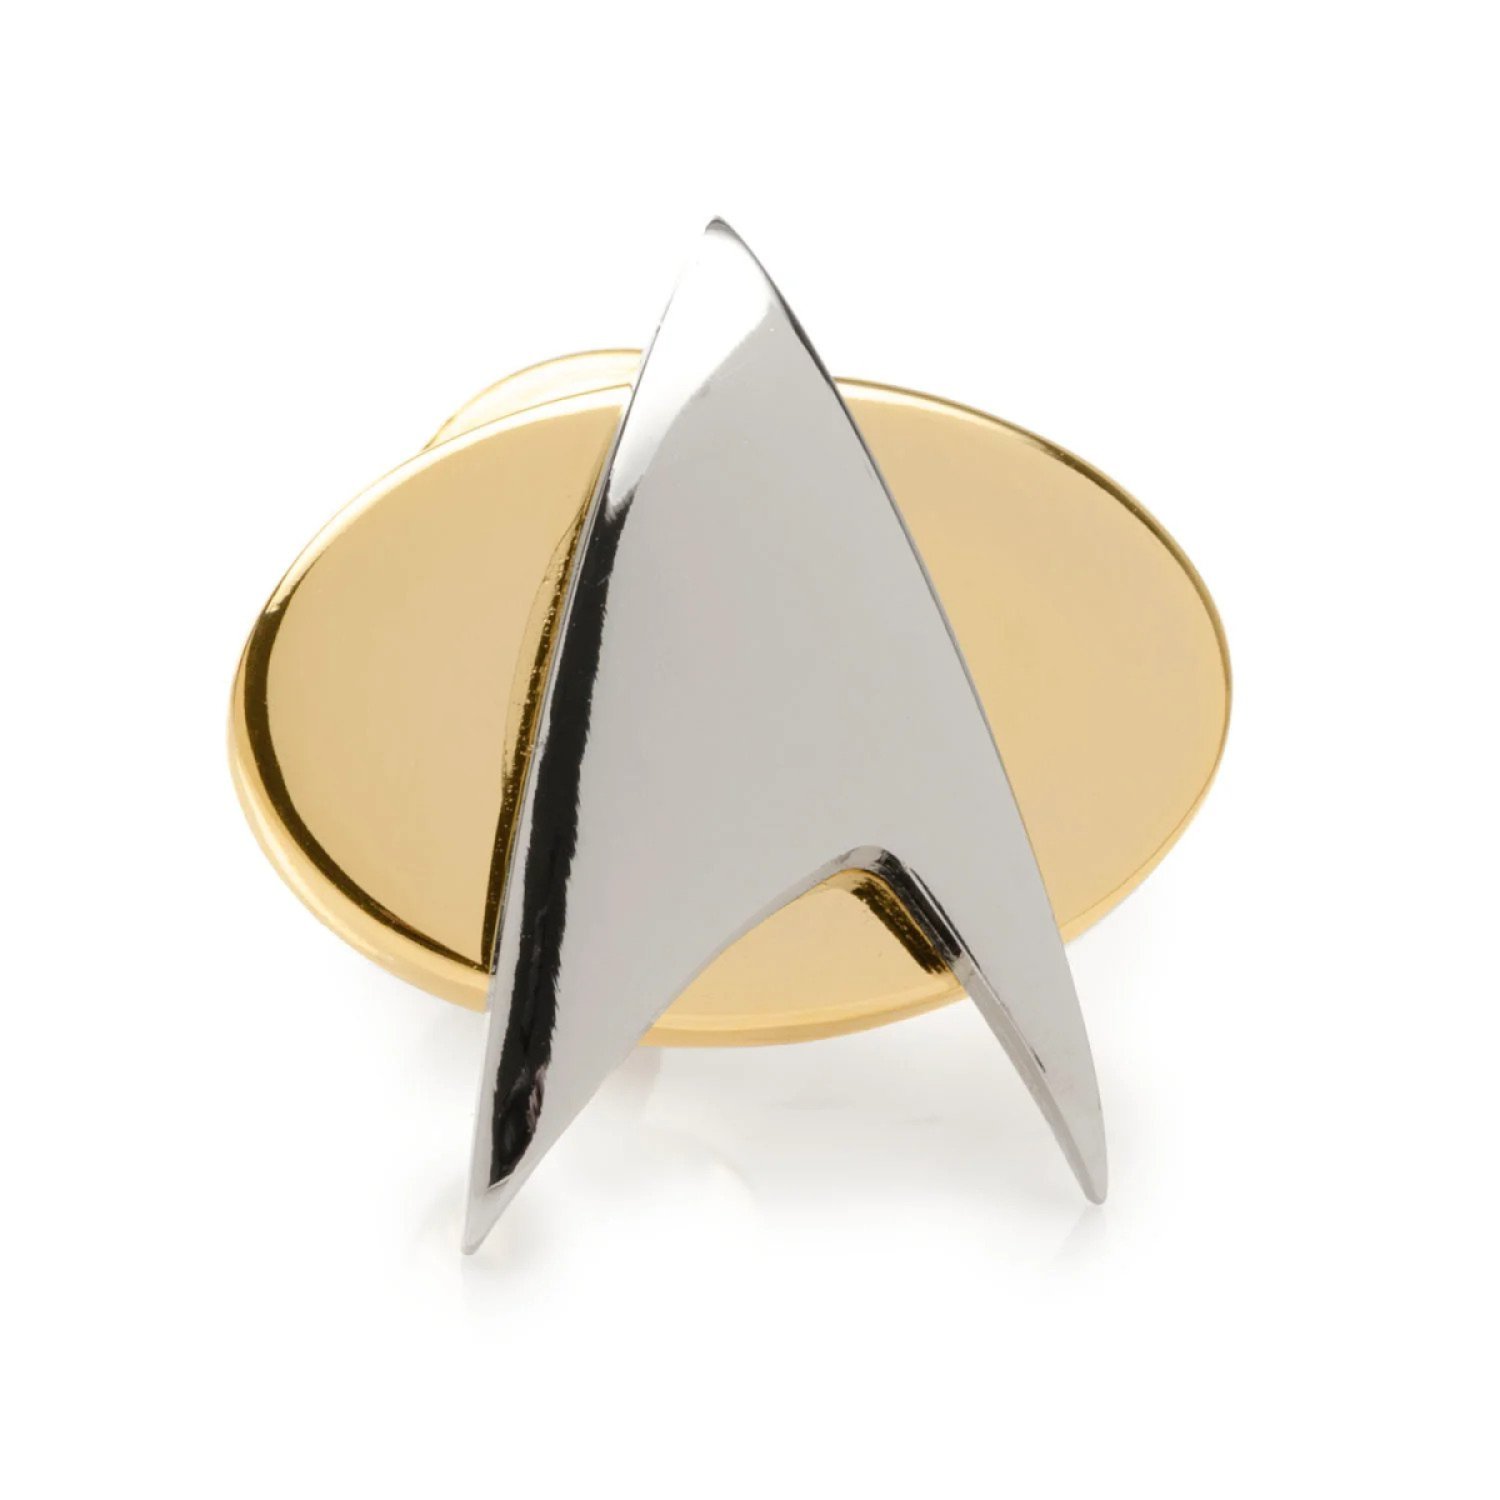 The Best 'Star Trek' Gifts